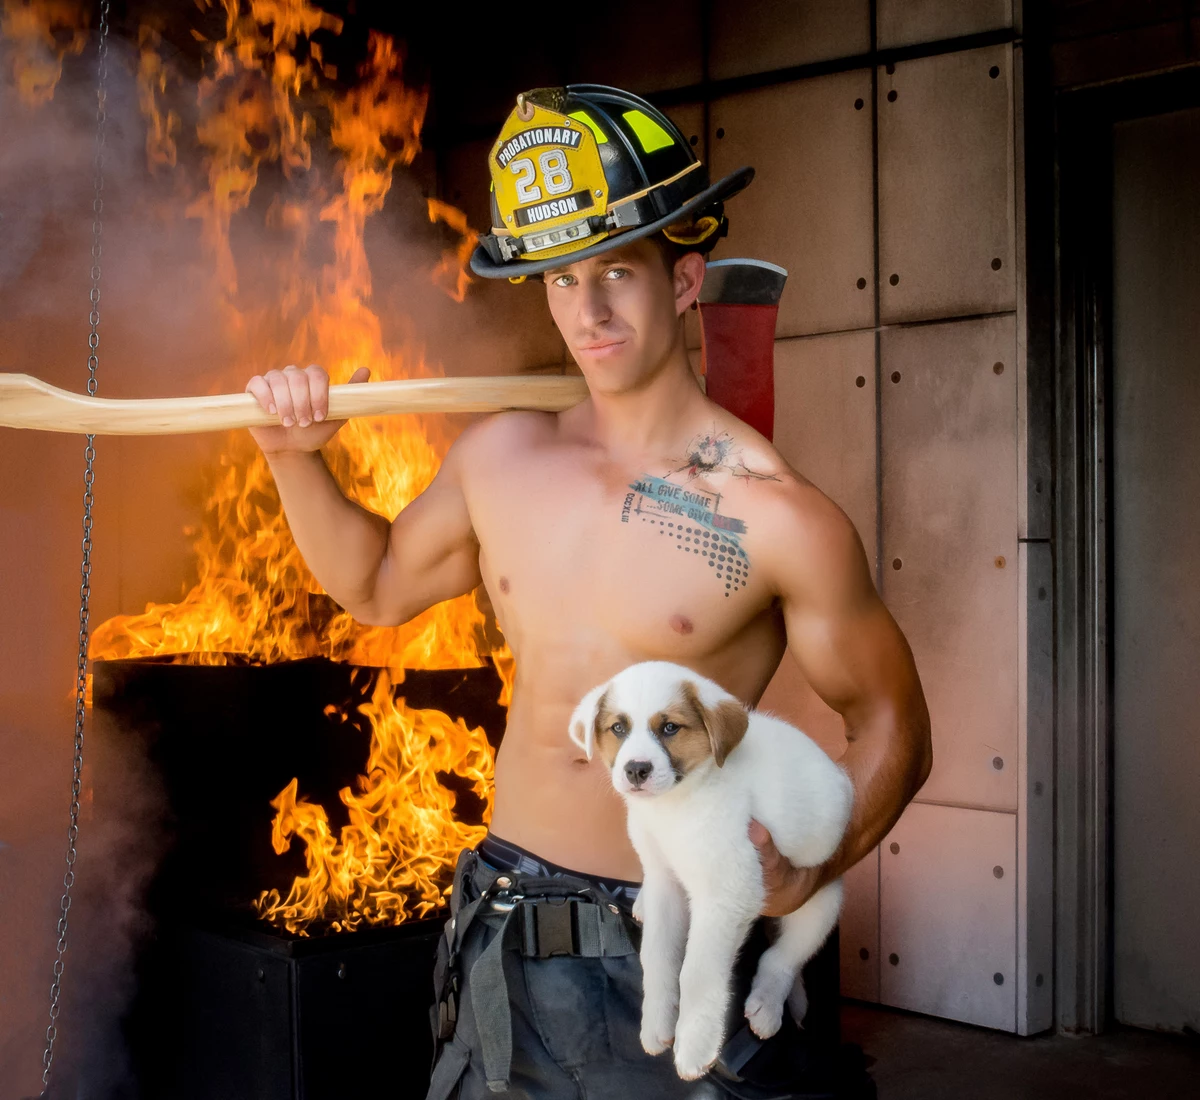 Colorado Firefighters Heat Up Calendar Season with Cute Dogs